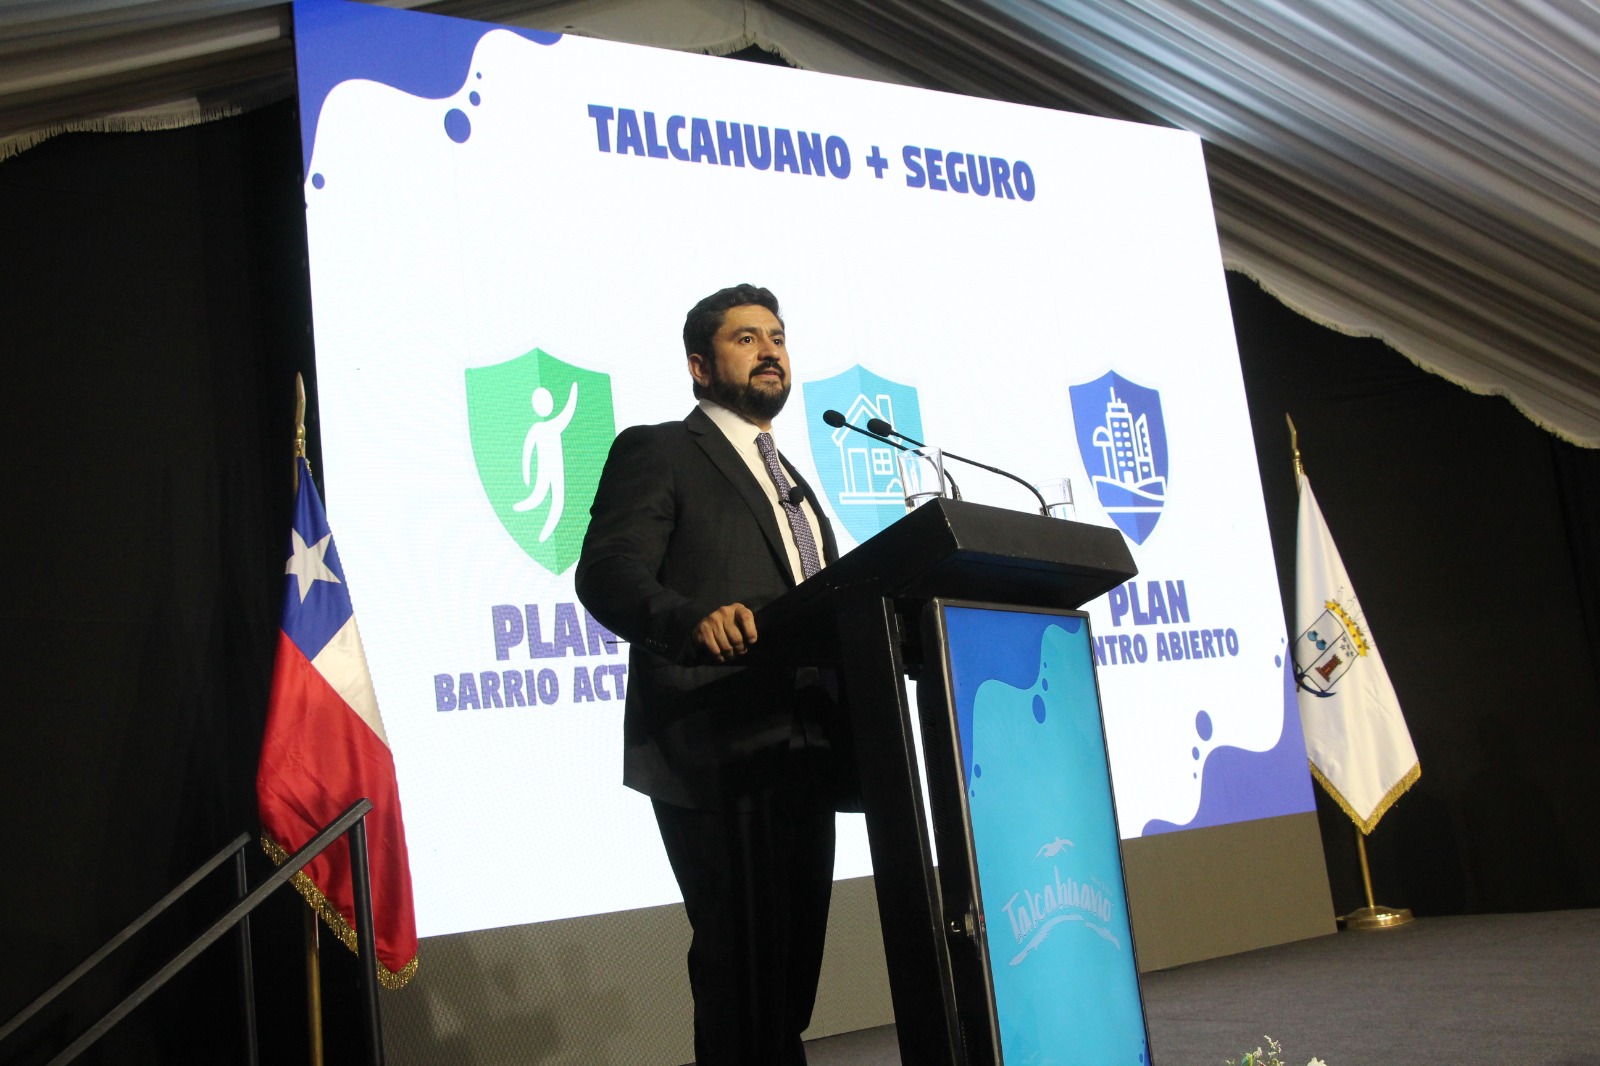 Talcahuano apuesta por construir y generar barrios más seguros 